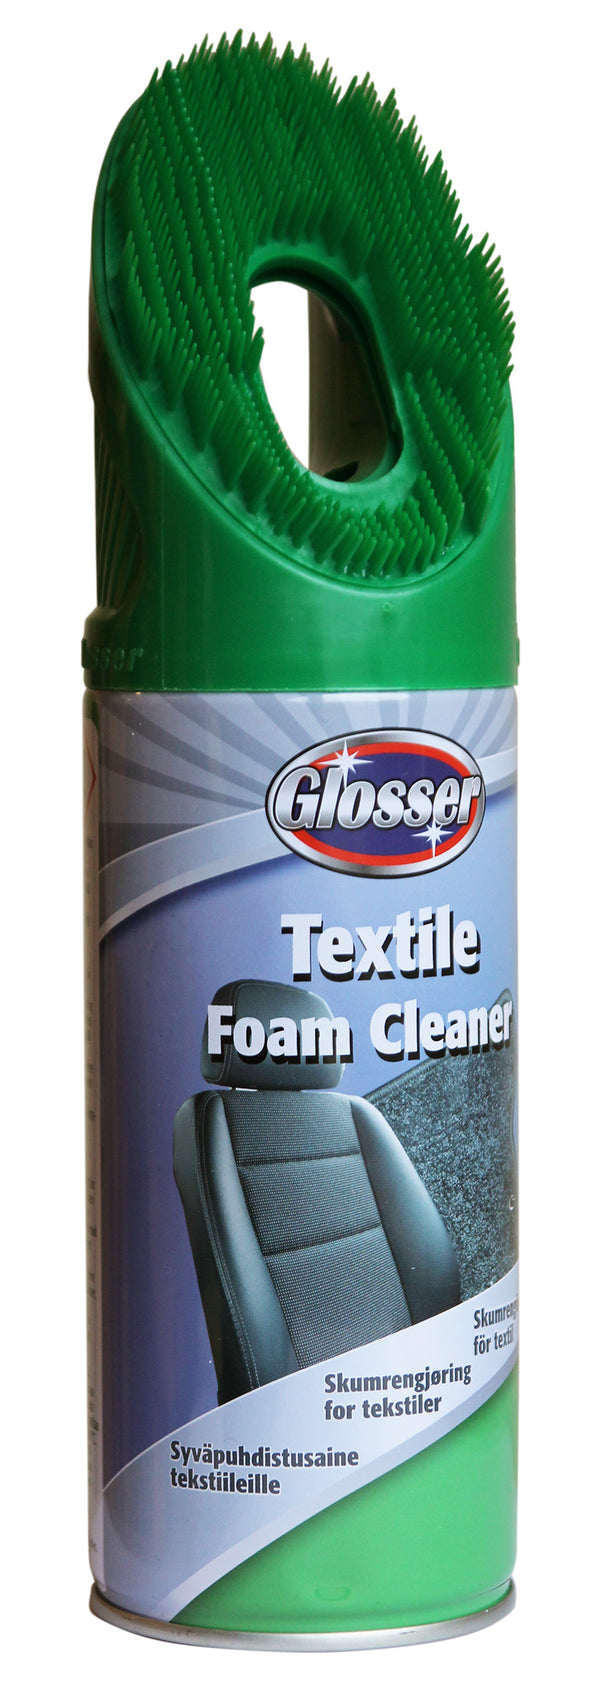 Glosser Foamcleaner Textile 450ml.